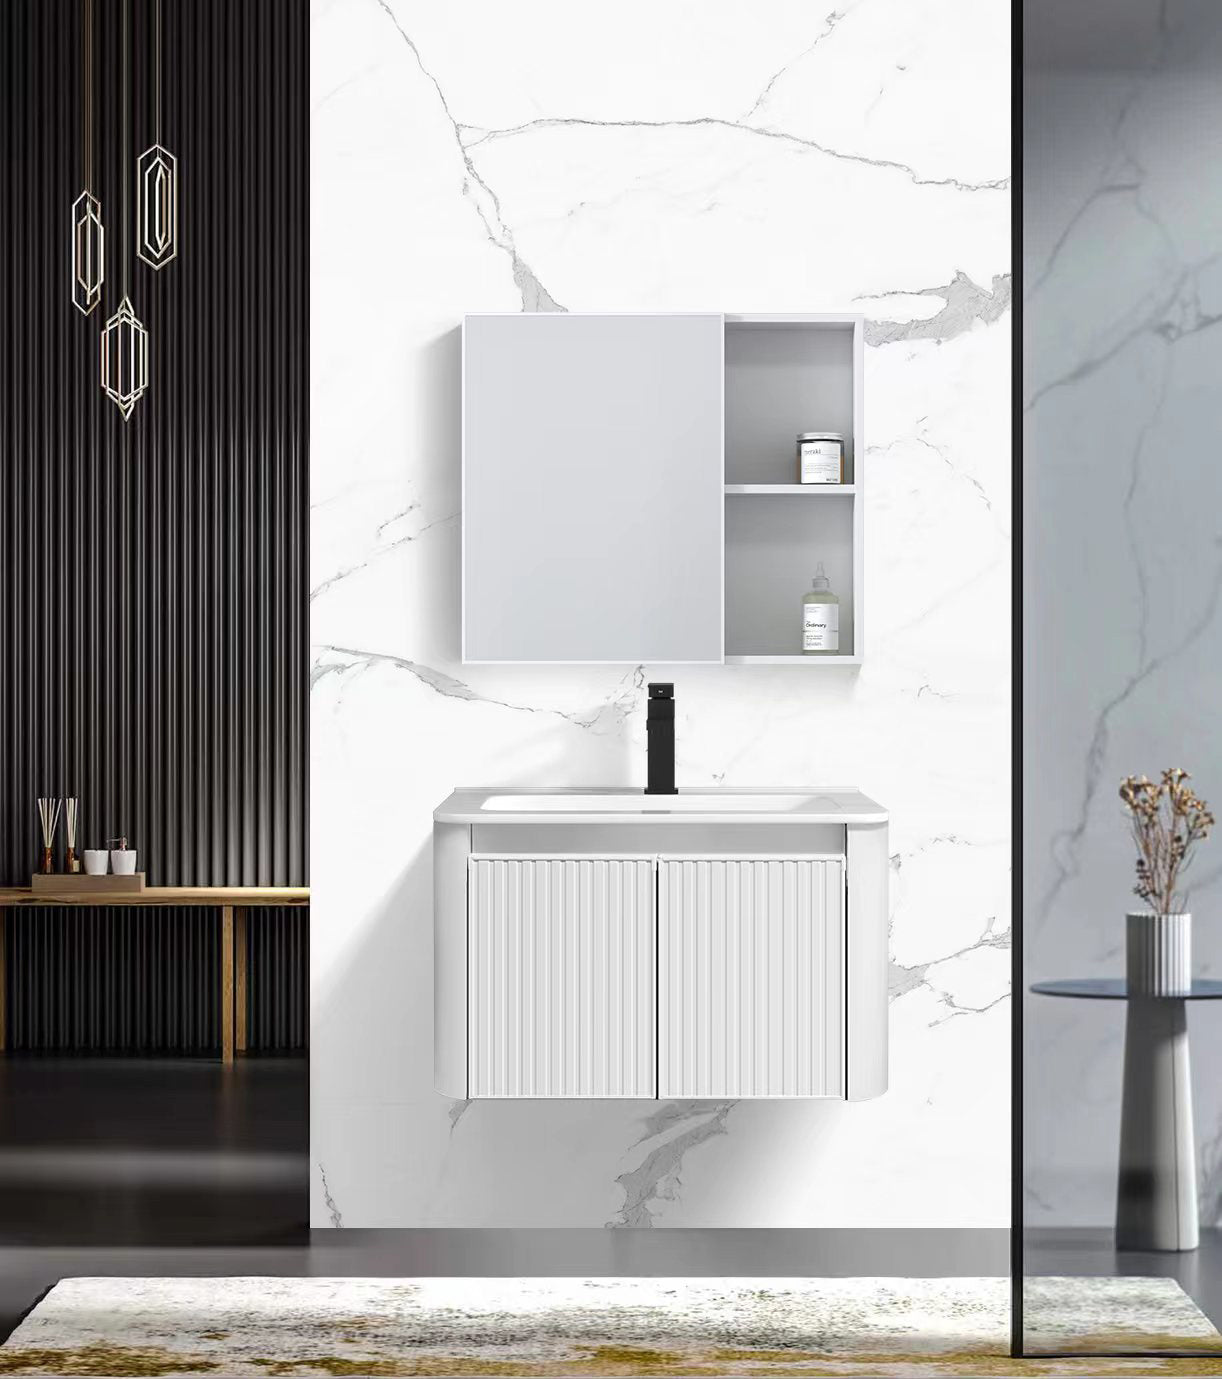 Шкаф для ванной комнаты серии 100 в скандинавском стиле, многослойный дизайн для хранения вещей